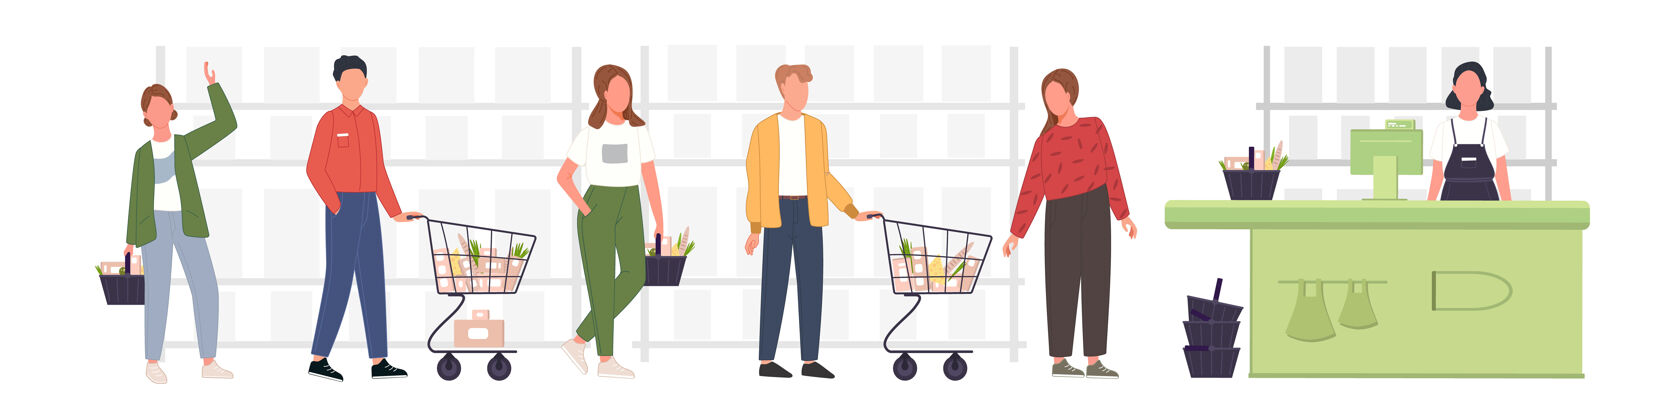 购物者人们在杂货店排队等候男人和女人在零售店或超市等候出纳超市购物车